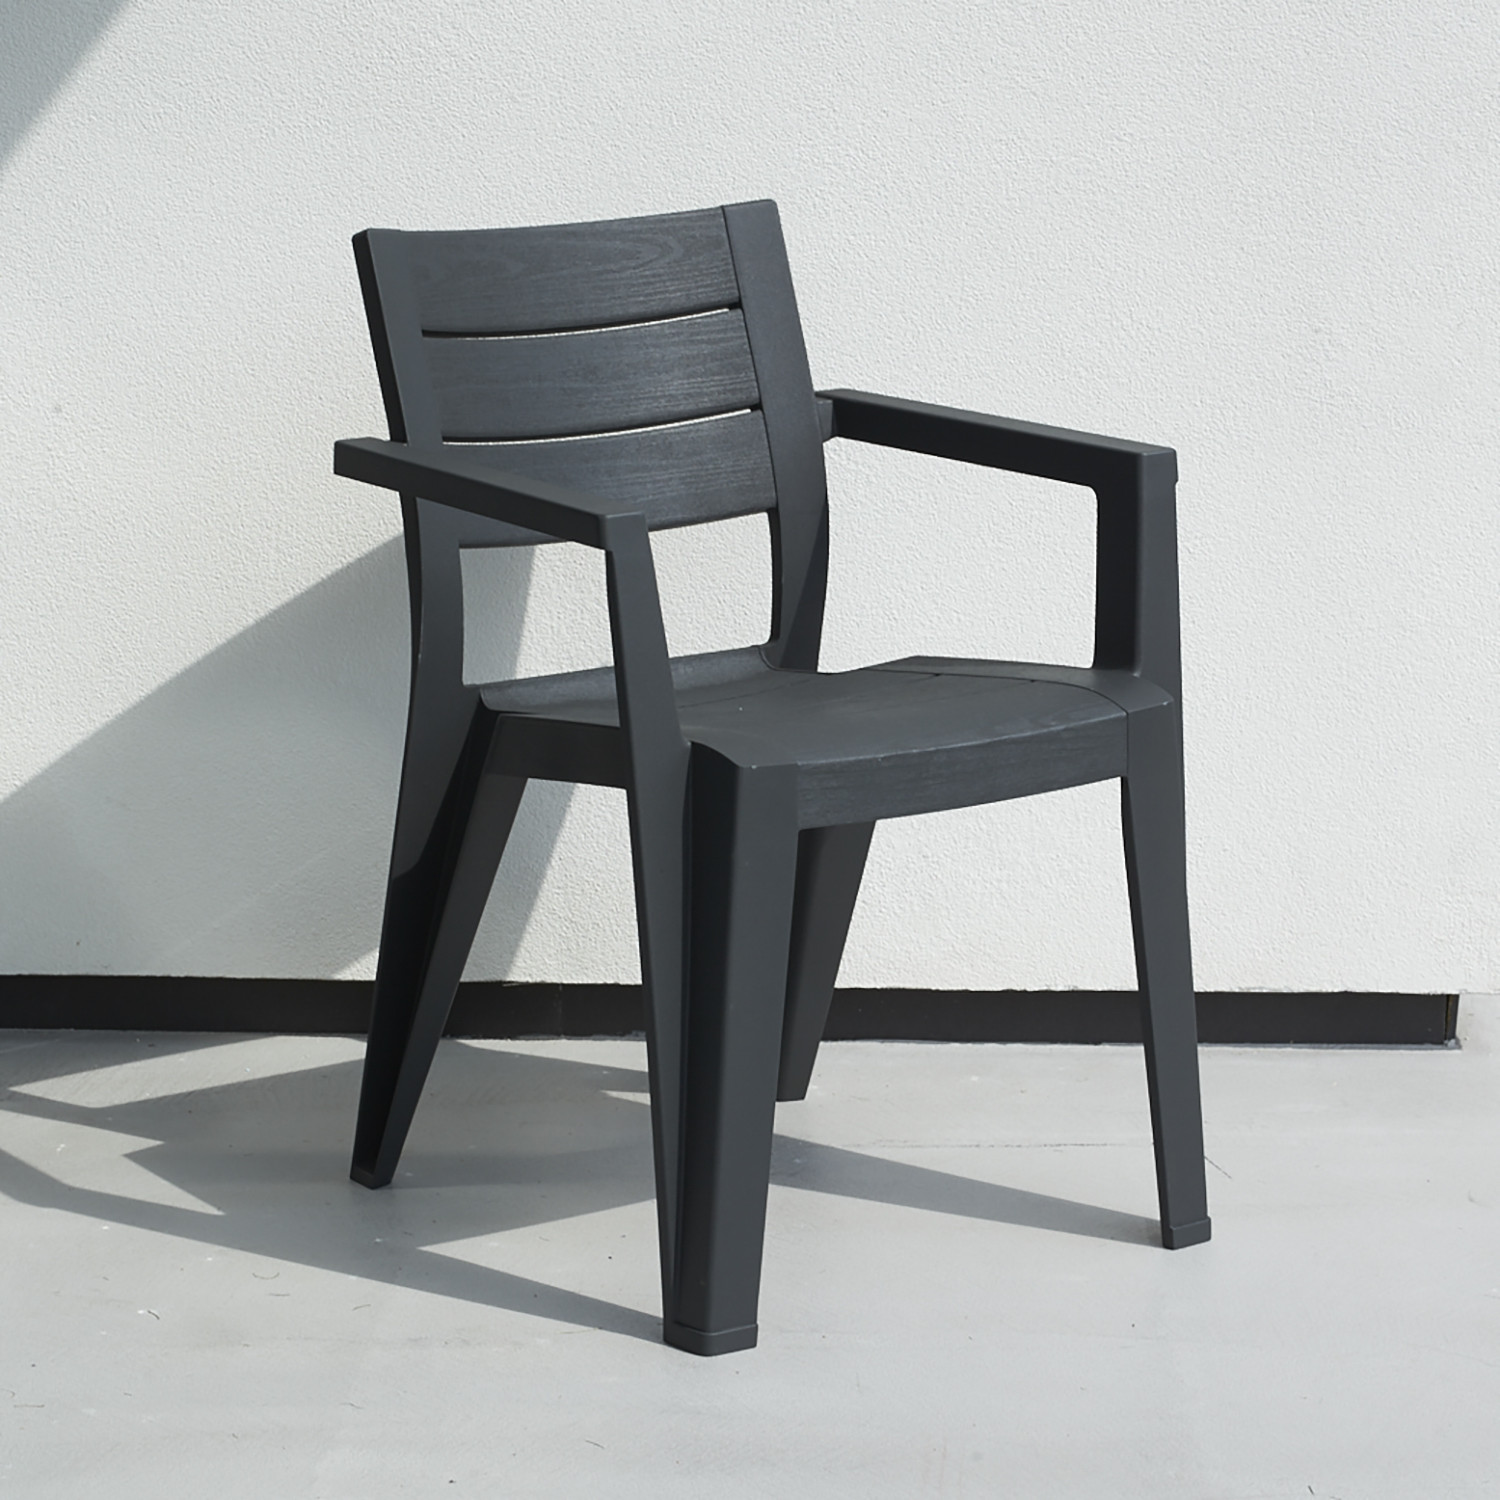 Keter Julie Graphite Garden Chair Image 1